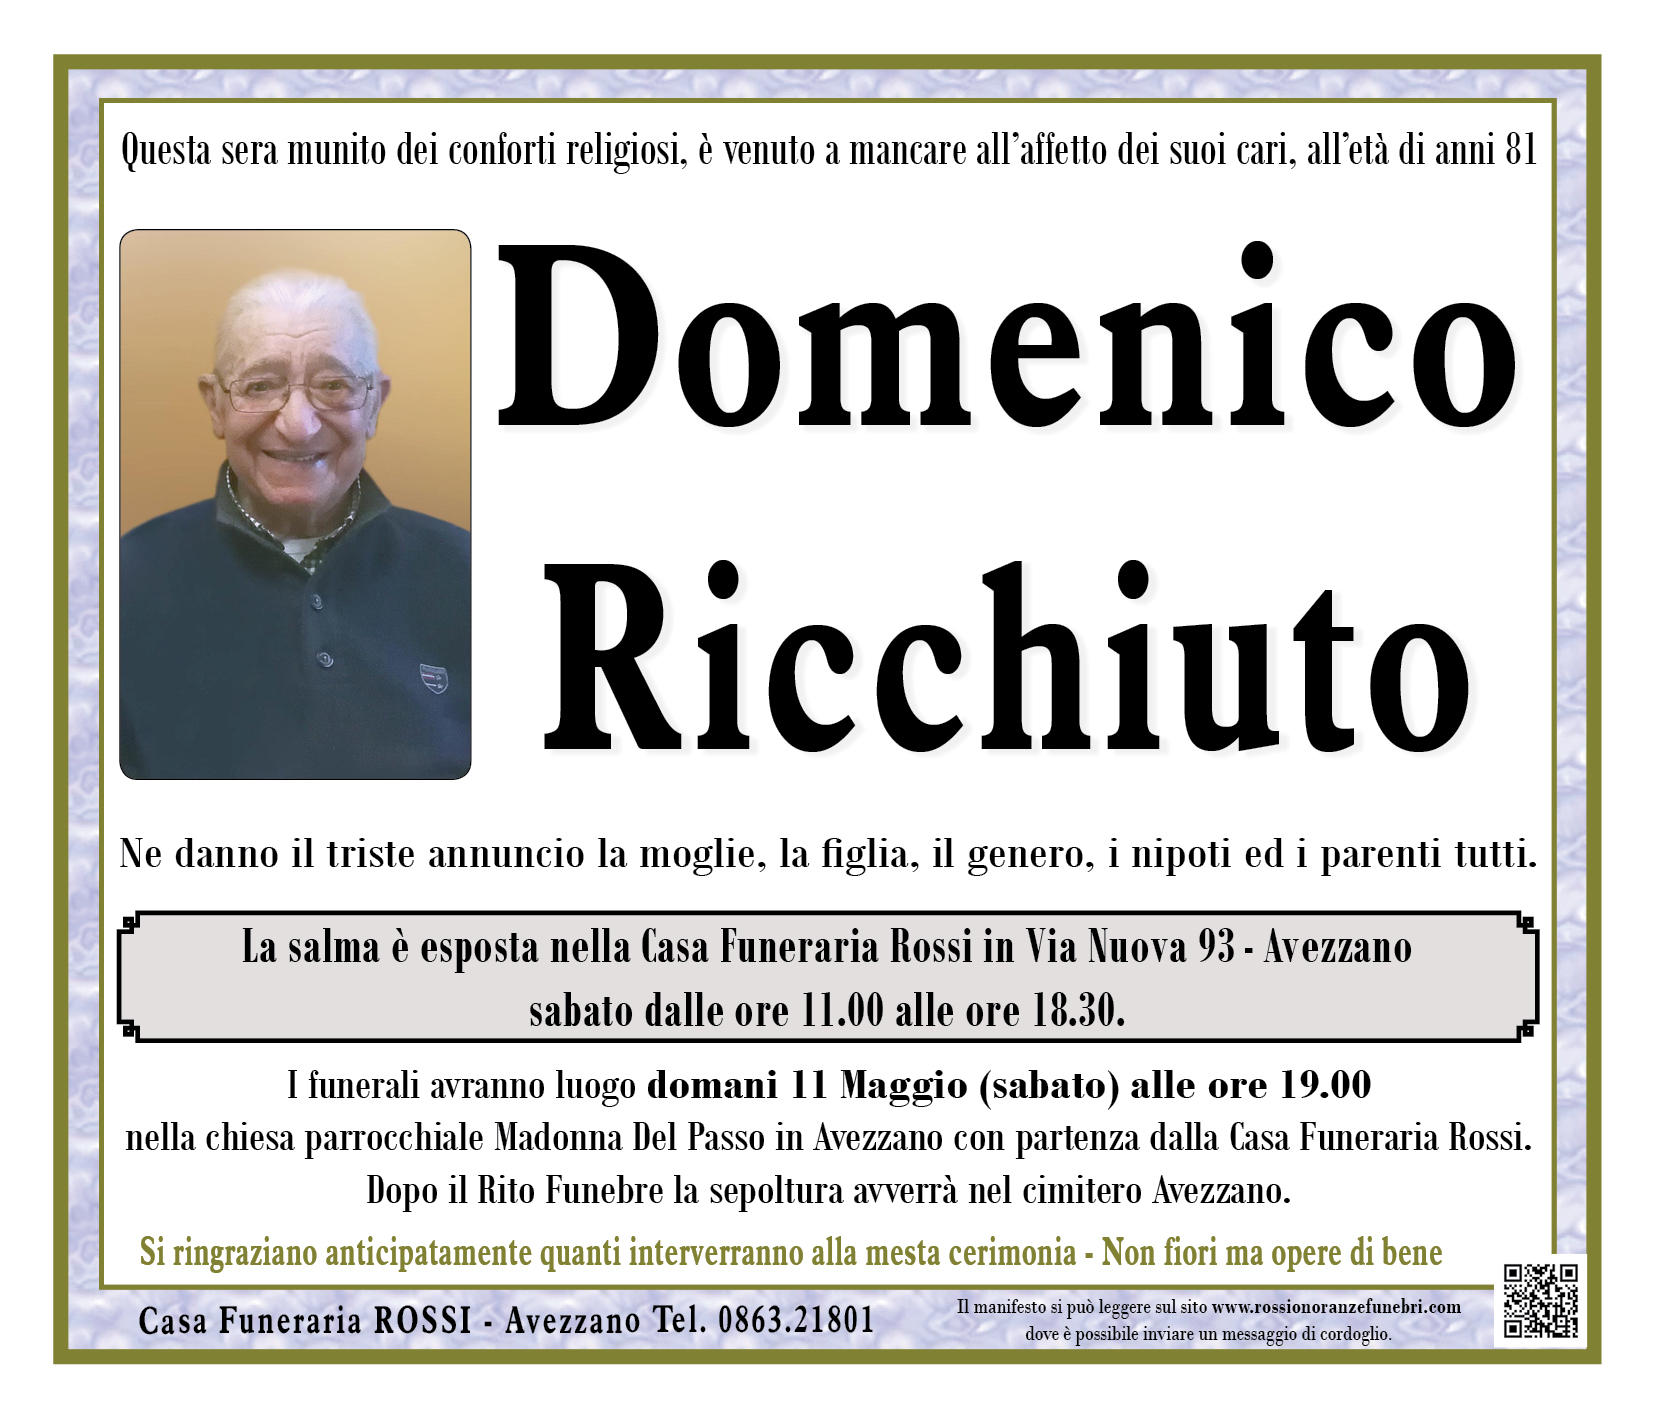 Domenico Ricchiuto